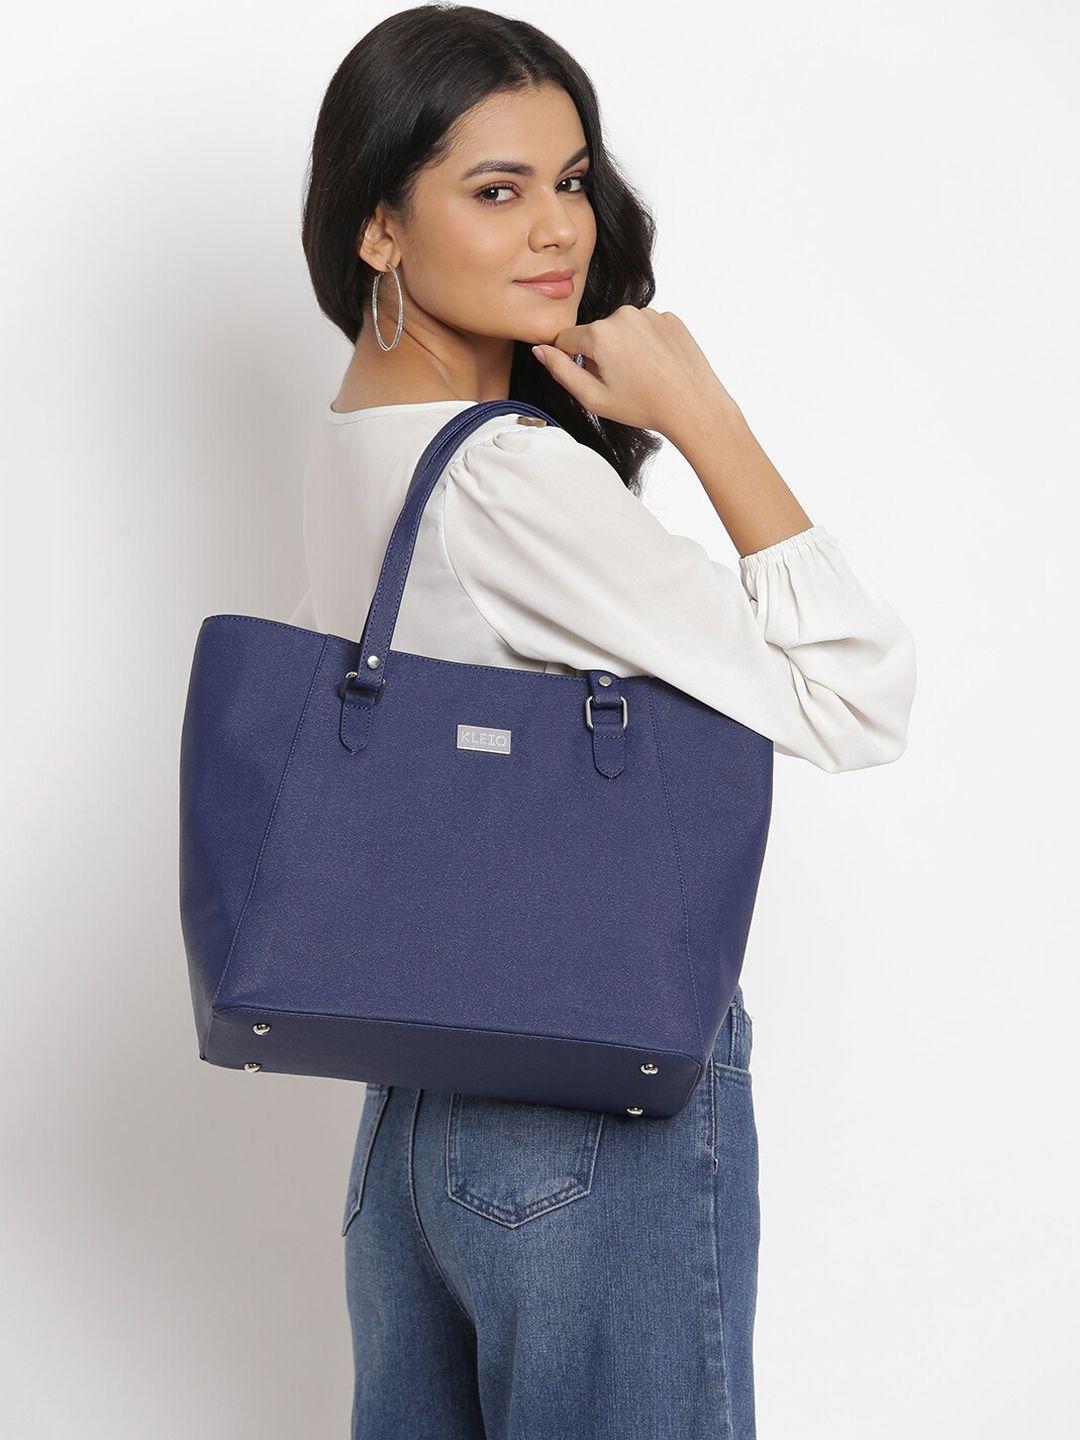 kleio-women-structured-shoulder-bag